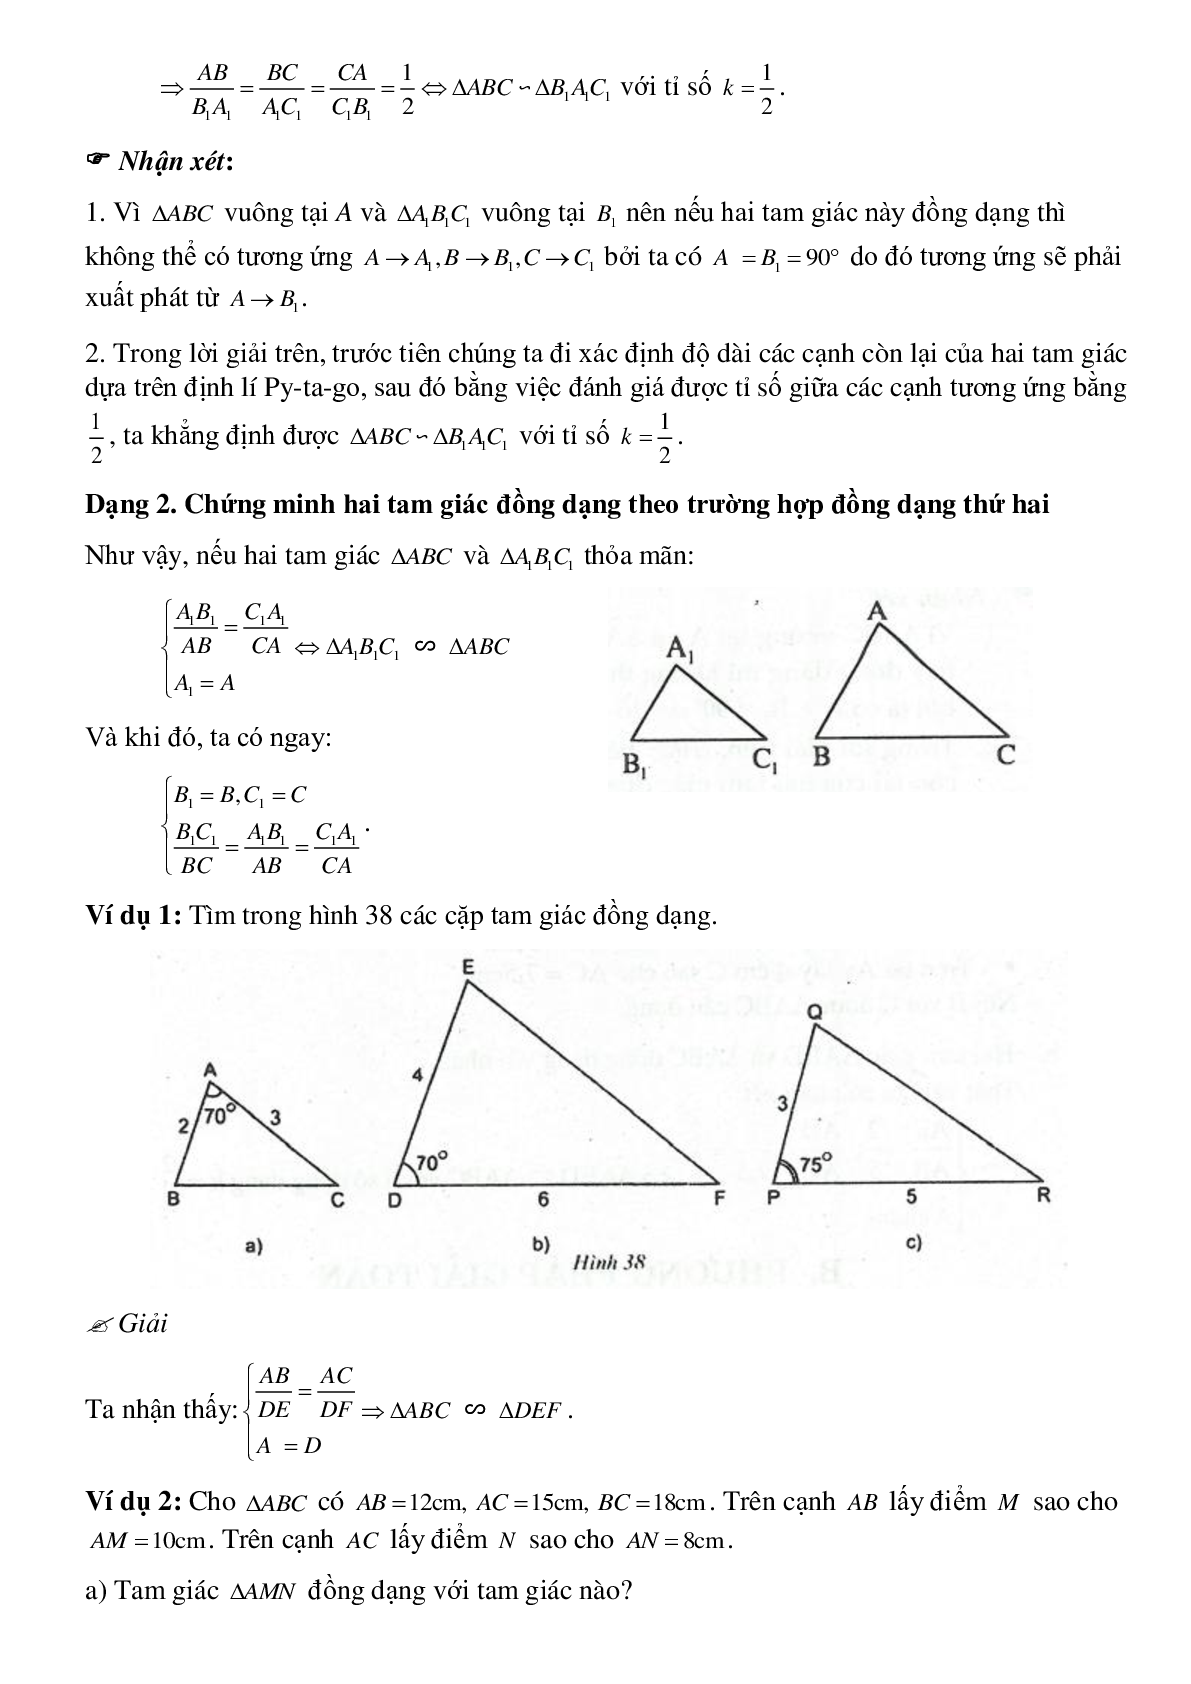 Phương pháp giải cụ thể, bài bác tập dượt về Chứng minh nhị tam giác đồng dạng tinh lọc (trang 3)